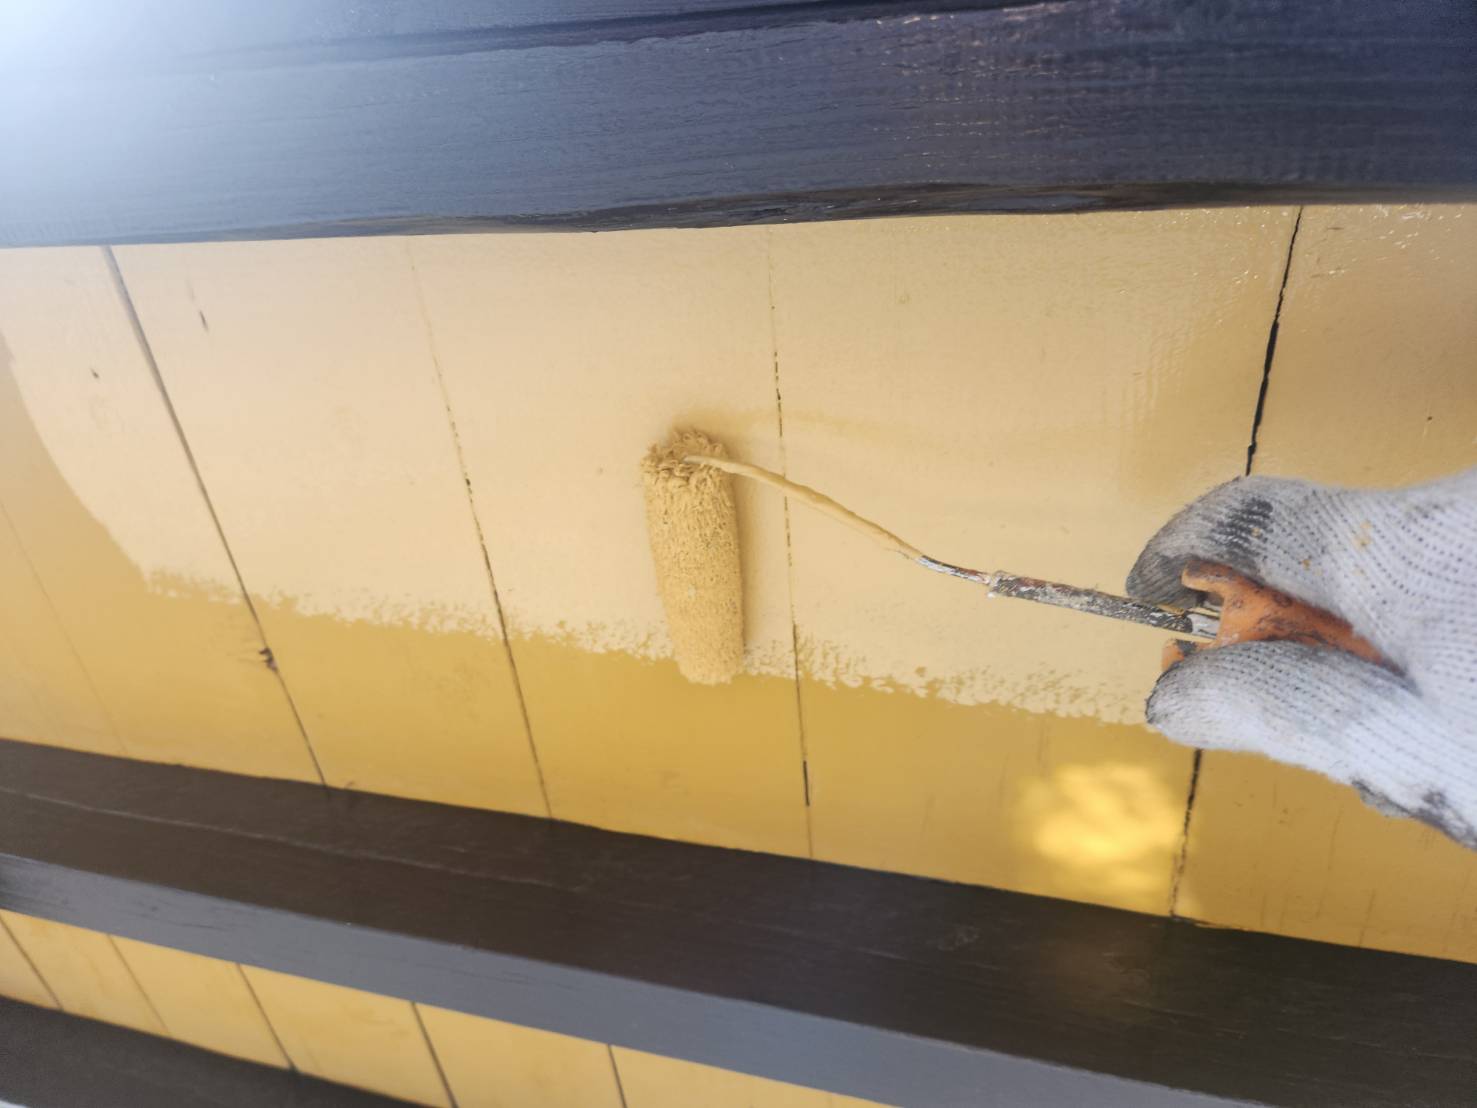 福岡県太宰府市高雄のM様邸で気になるチョーキングが発生している外壁をエシカルプロクールのフッ素塗料を使用して再塗装し、今後もさらに長持ちさせる施工を行っていきます。3/13着工です。【OB様より】